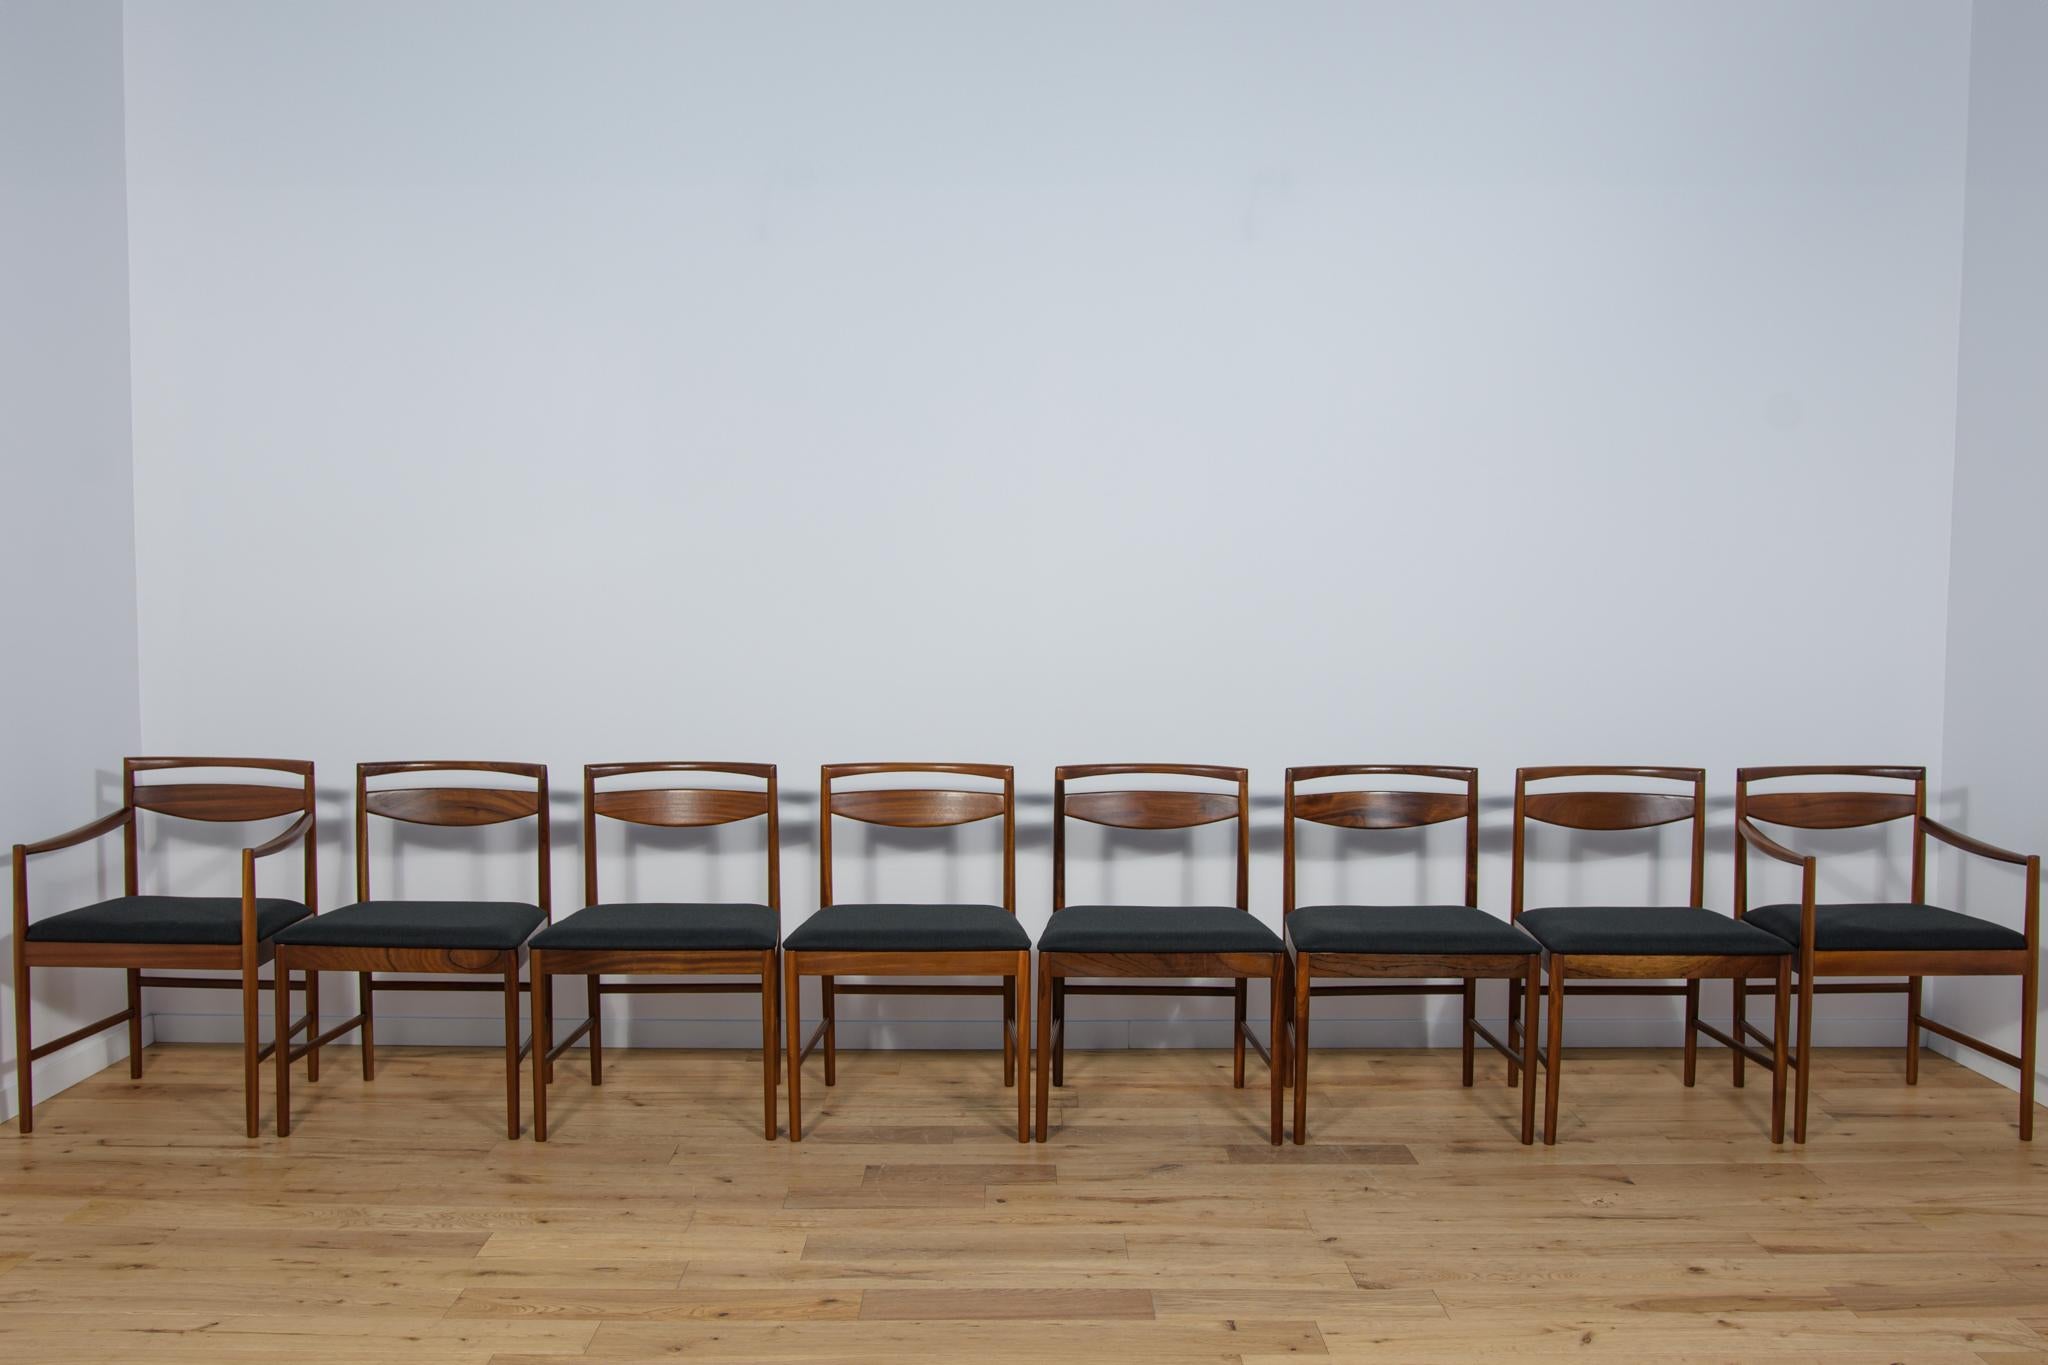 Ein Paar von zwei Sesseln und sechs Stühlen Modell 9513, 1972 von Tom Robertson für den britischen Hersteller McIntosh entworfen. Die Stühle haben ein minimalistisches Gestell im japanischen Stil mit organisch abgerundeten Kanten. Das Set ist aus